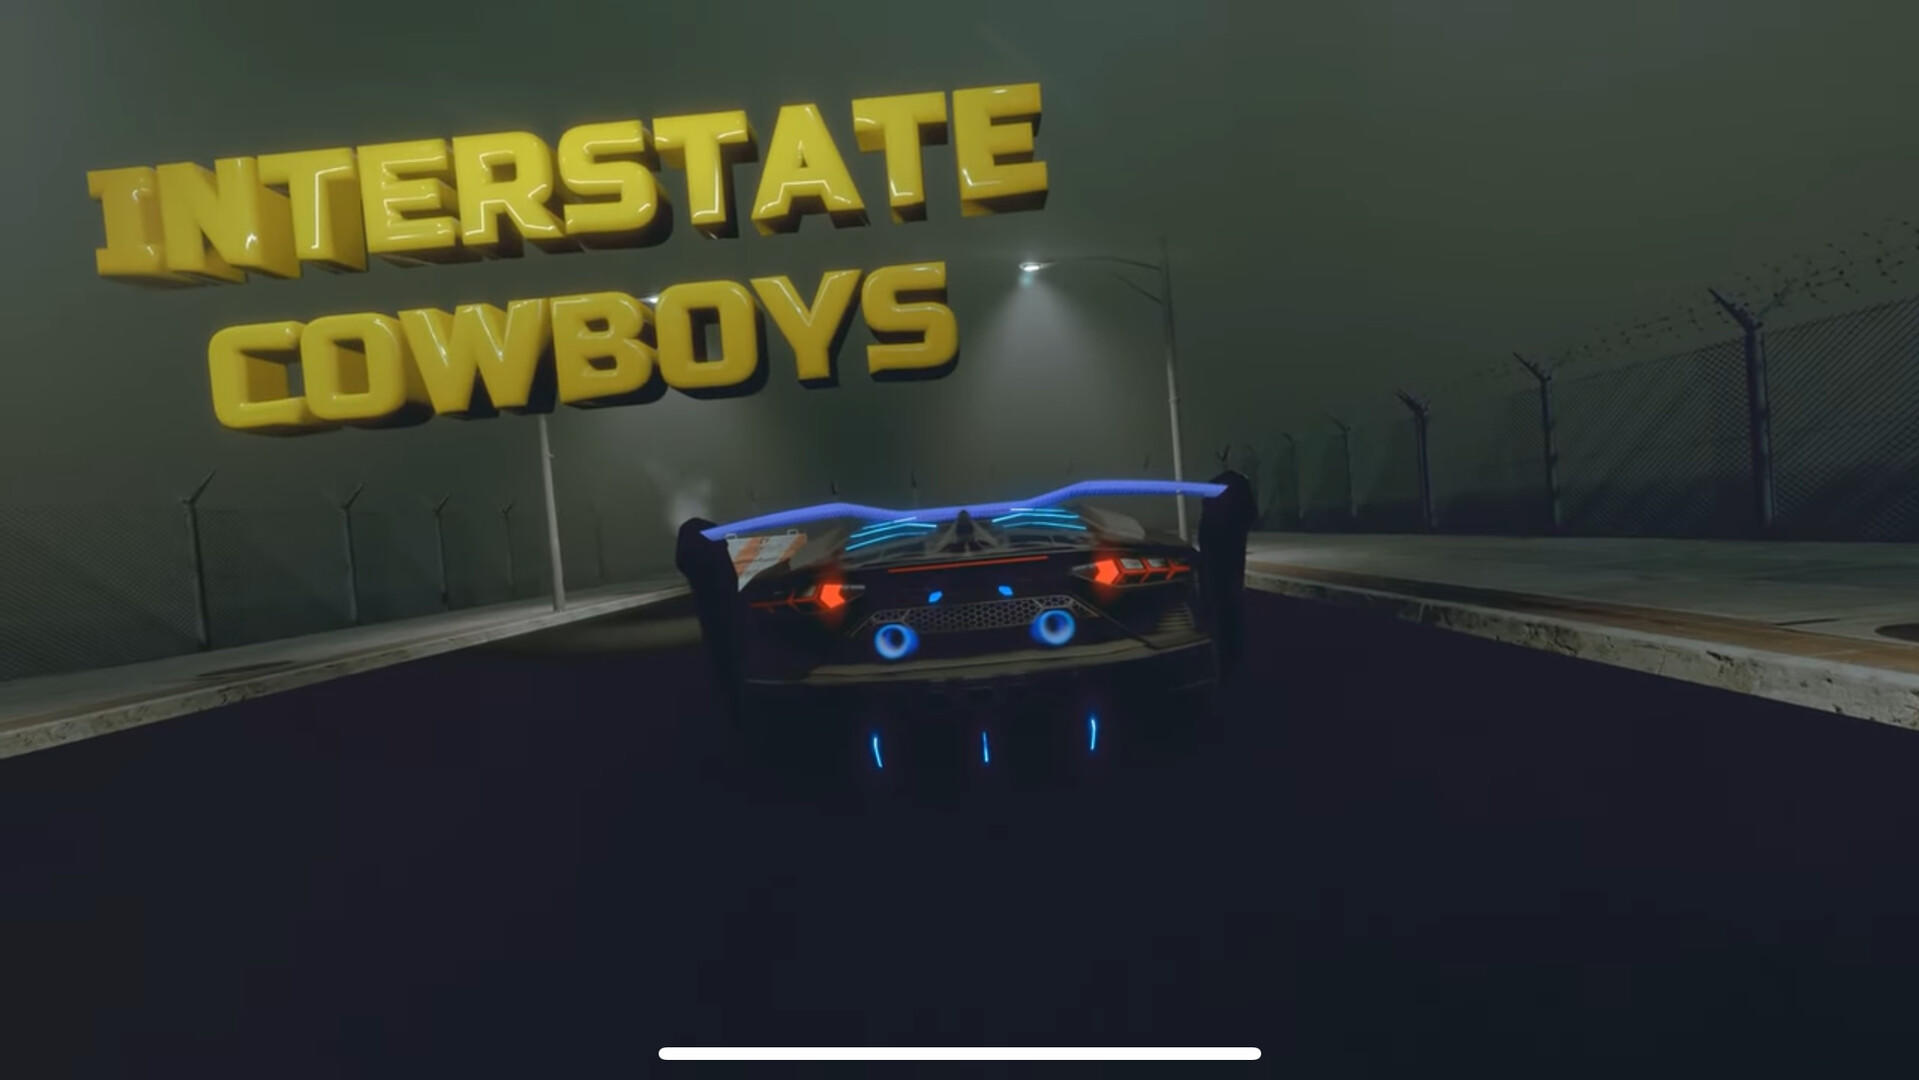 Interstate Cowboys screenshot game